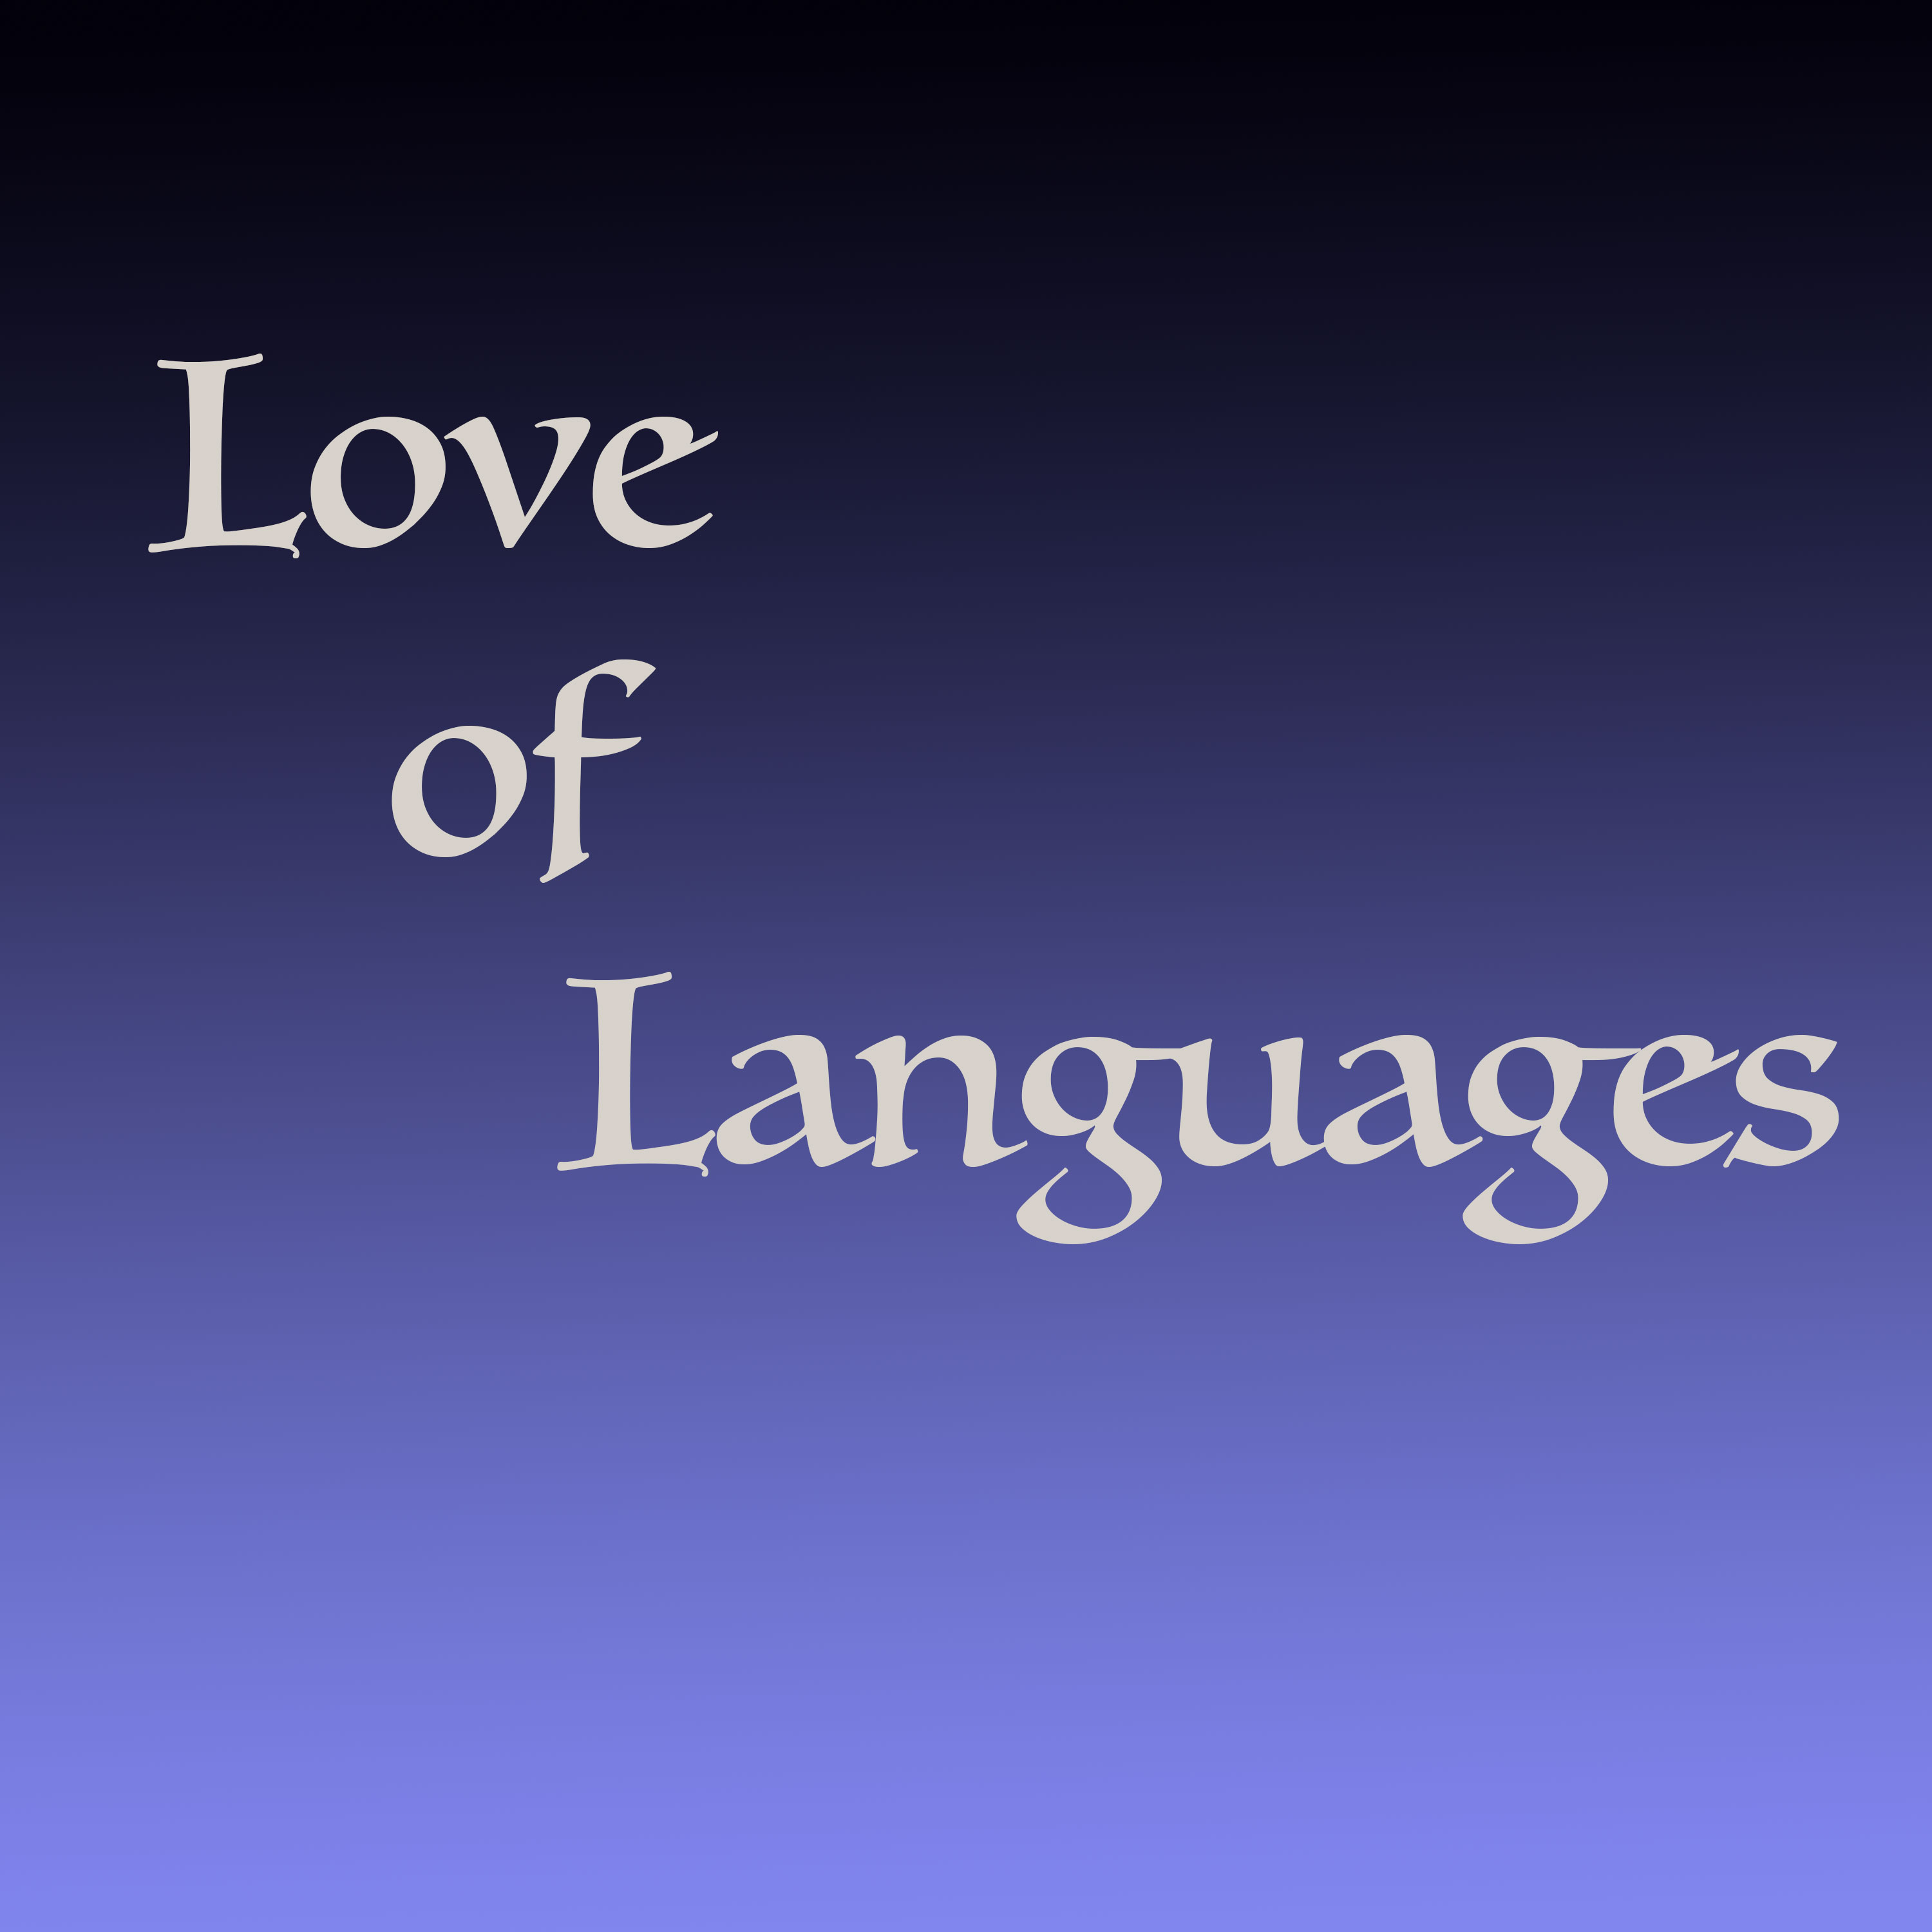 Love of Languages - Podcast Addict